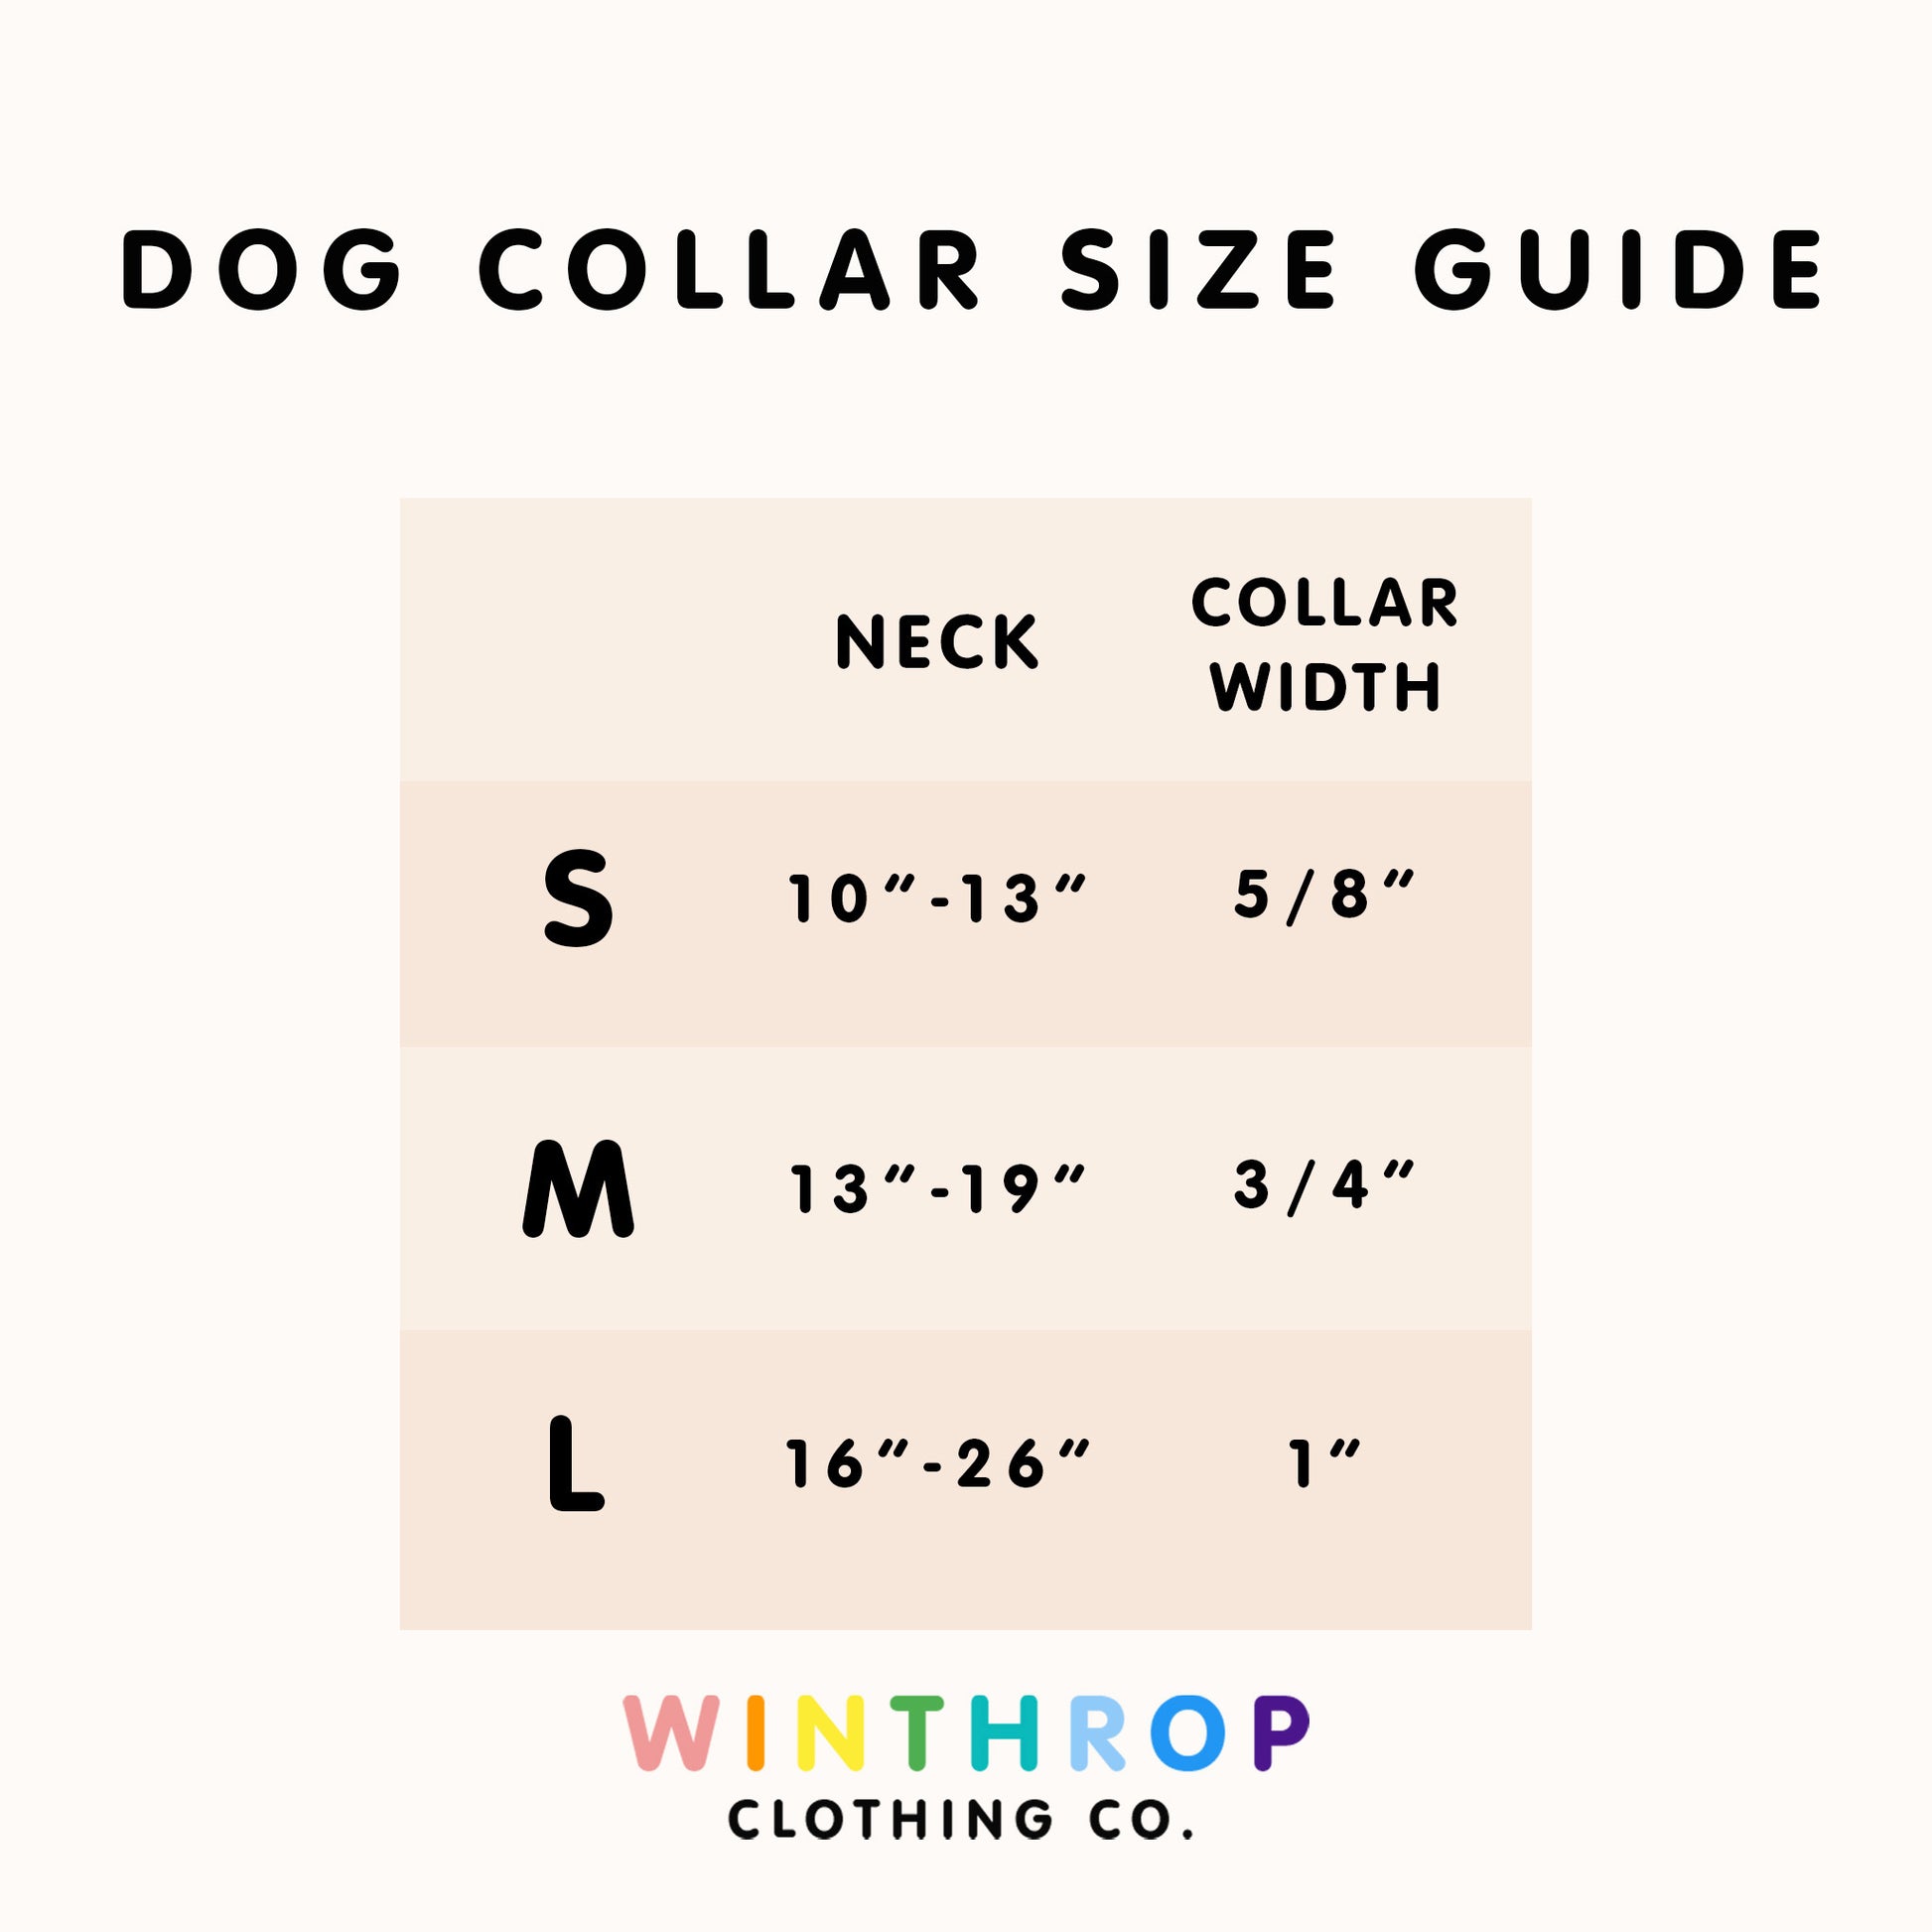 Pink Dog Collar